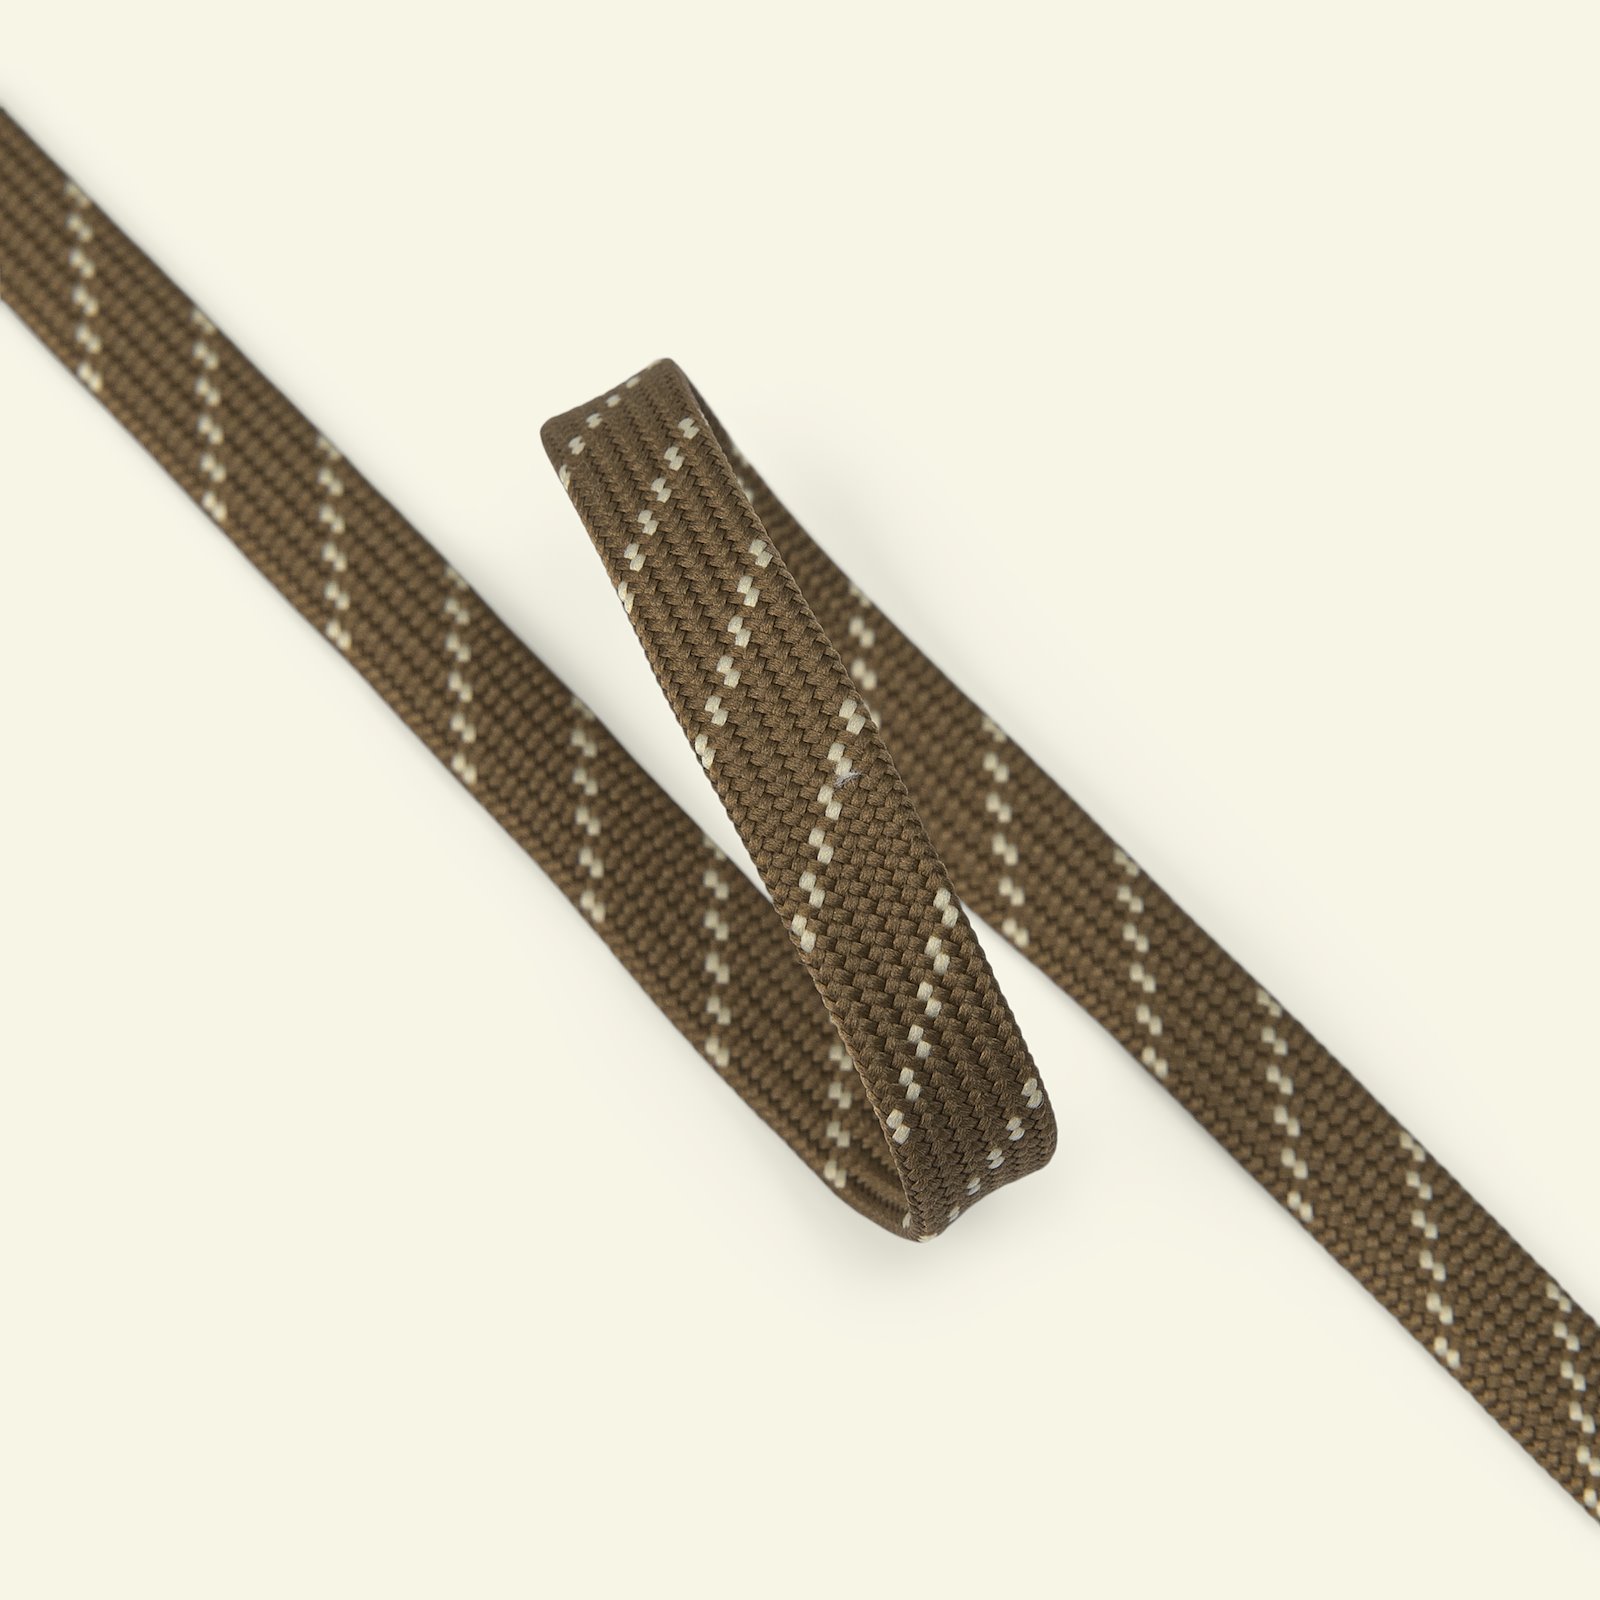 Slangebånd 10 mm brunt/naturligt, 2 m 22425_pack